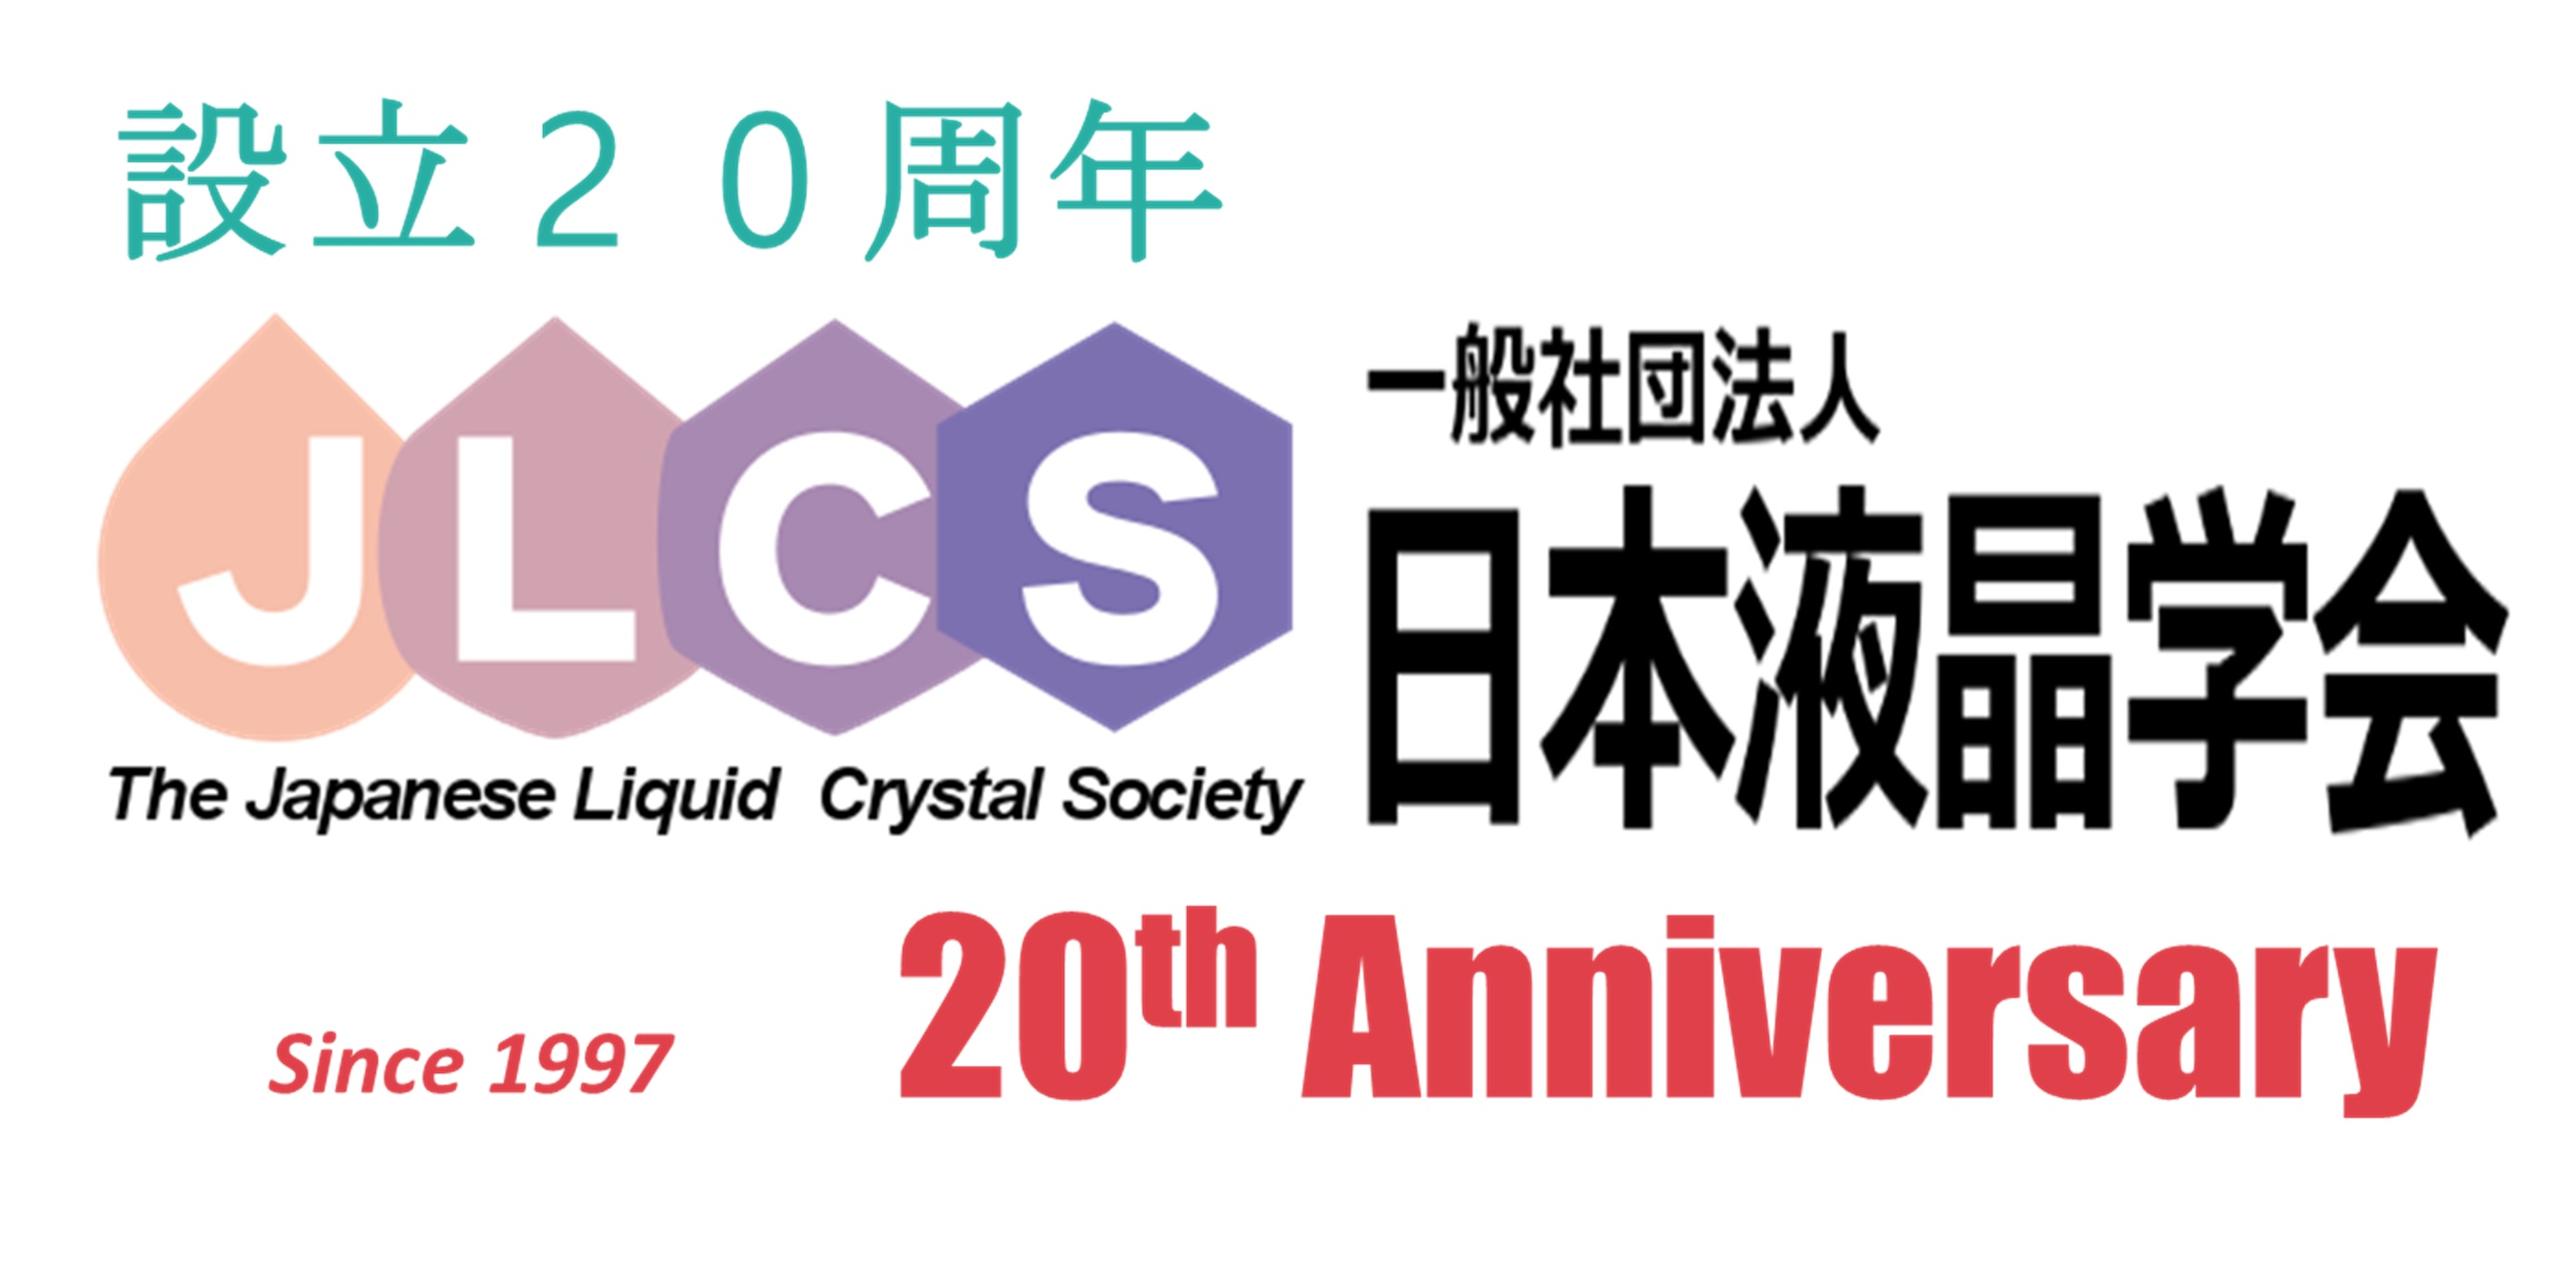 日本液晶学会ロゴについて お知らせ 刊行物 一般社団法人日本液晶学会